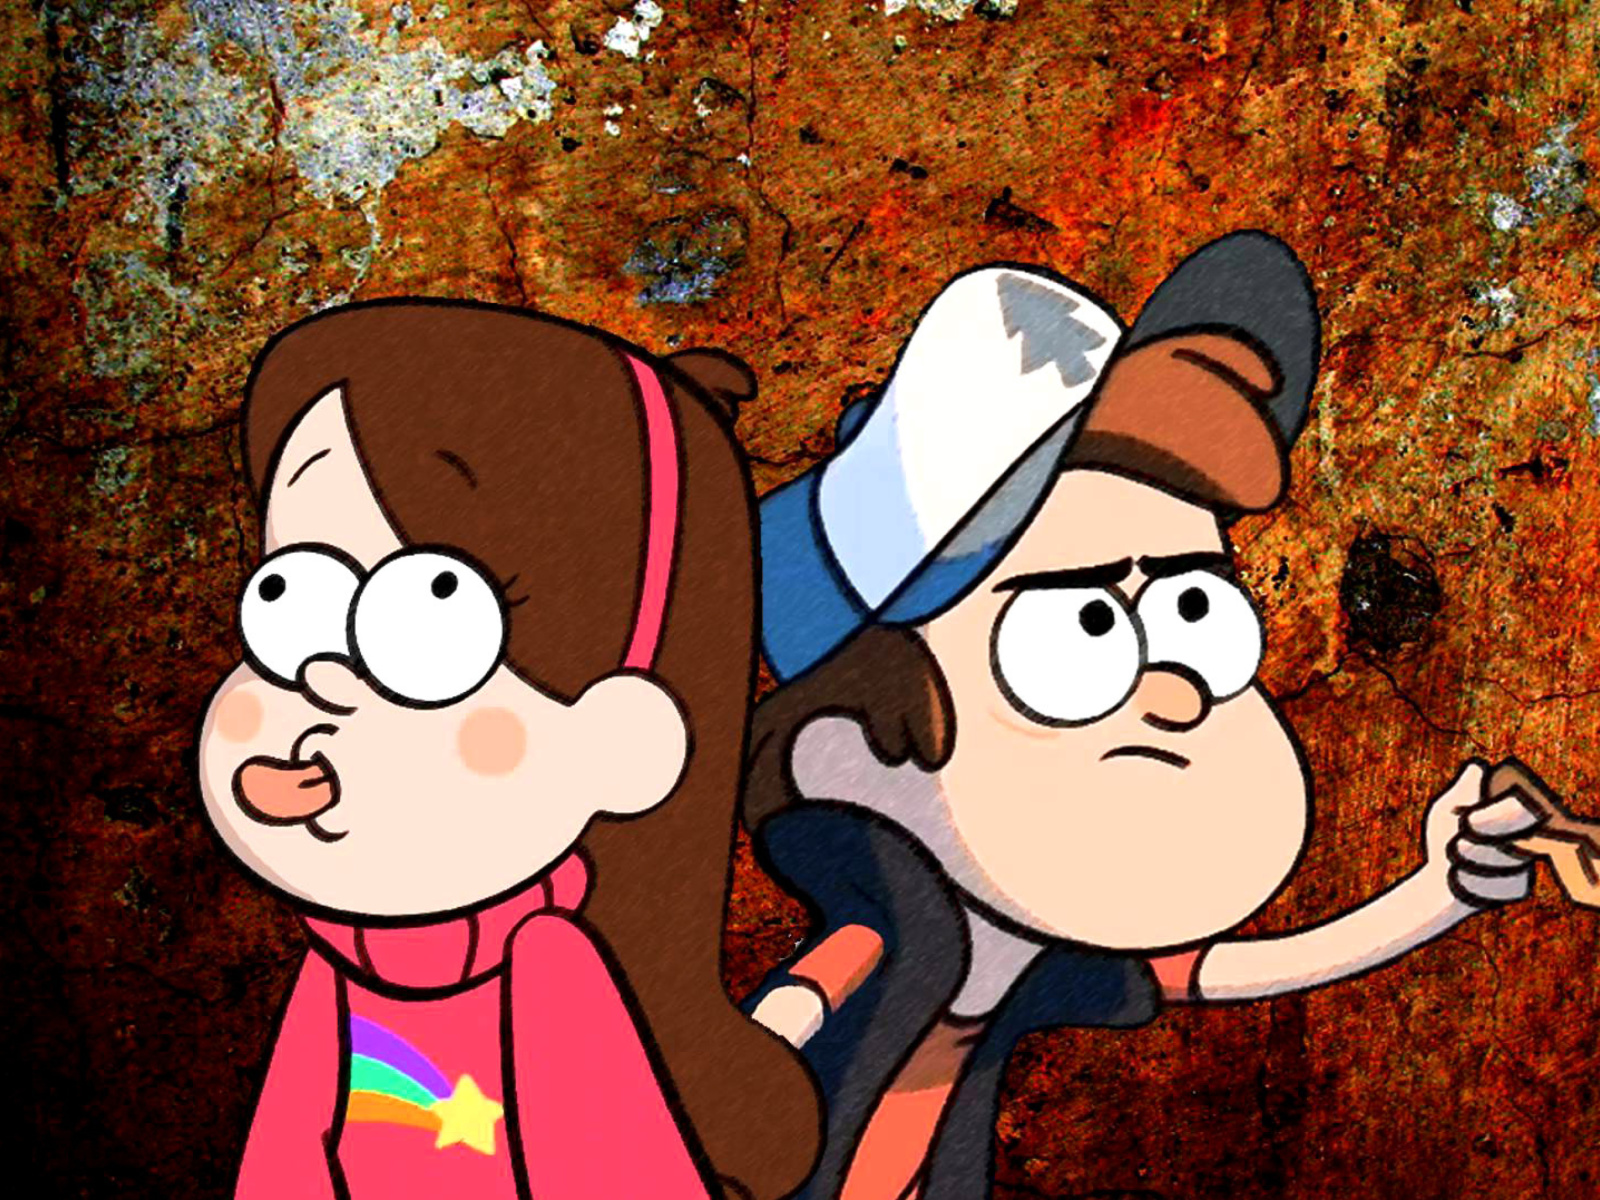 Das Mabel and Dipper in Gravity Falls Wallpaper 1600x1200